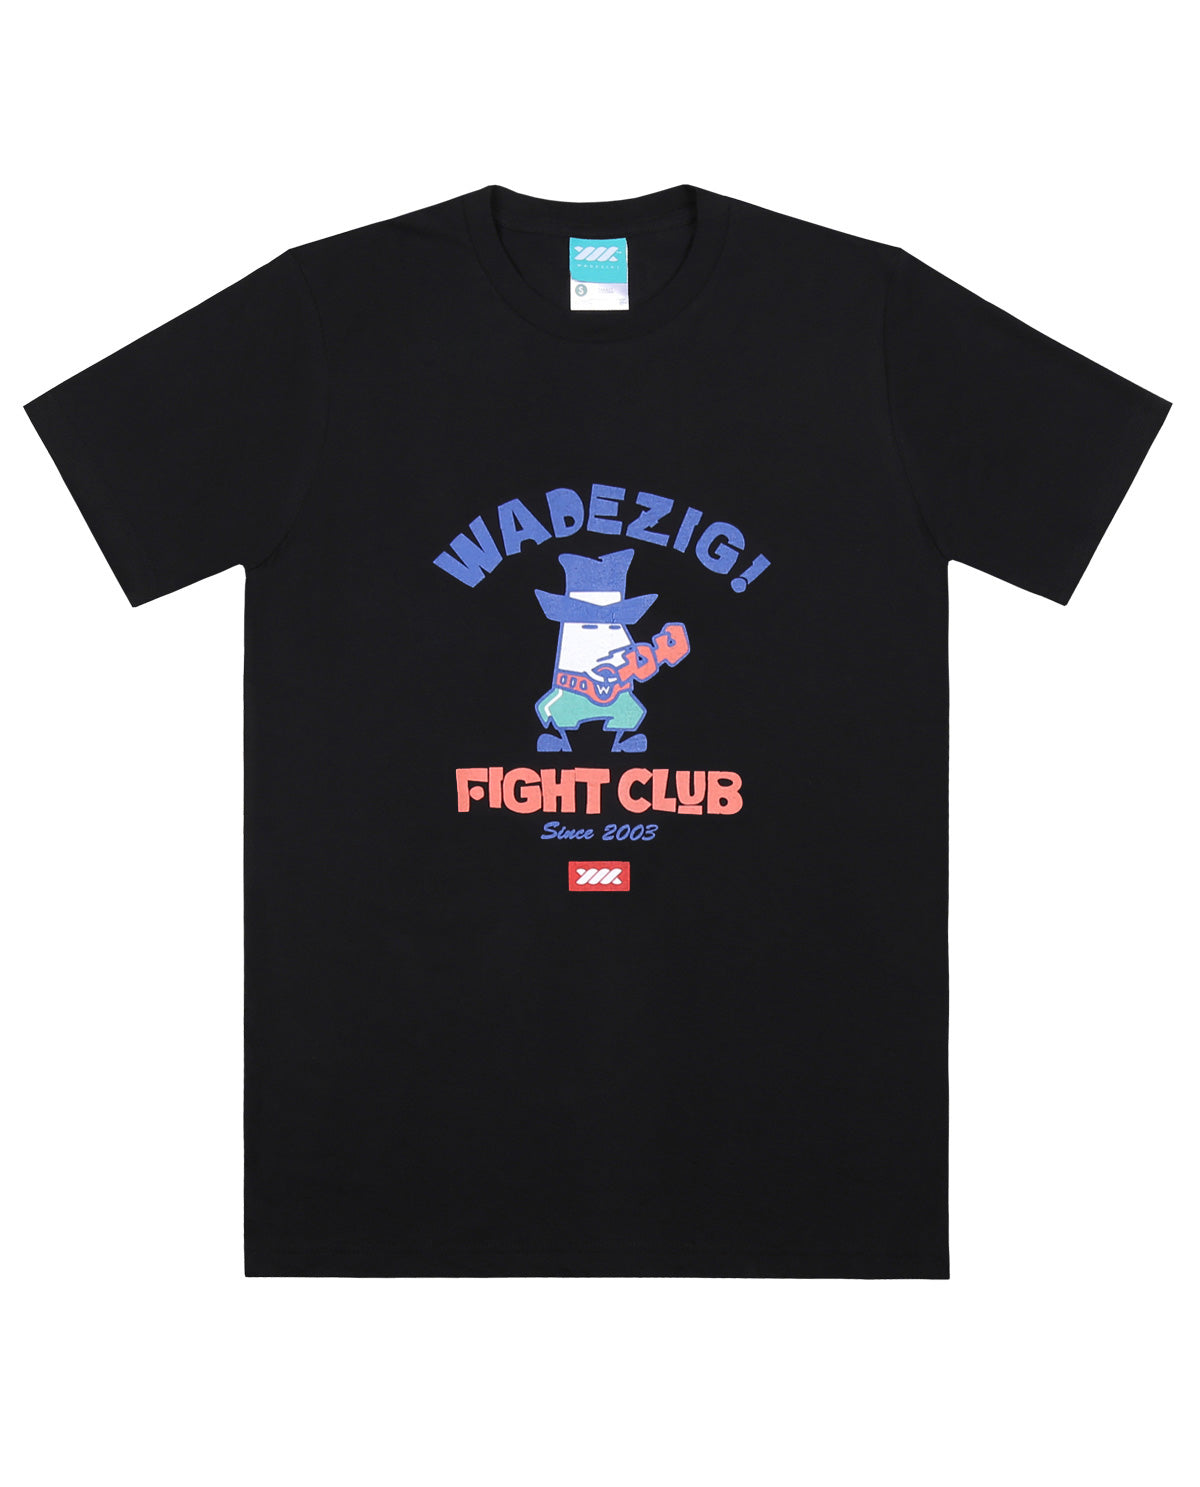 Wadezig! T-Shirt - Fight Club Black